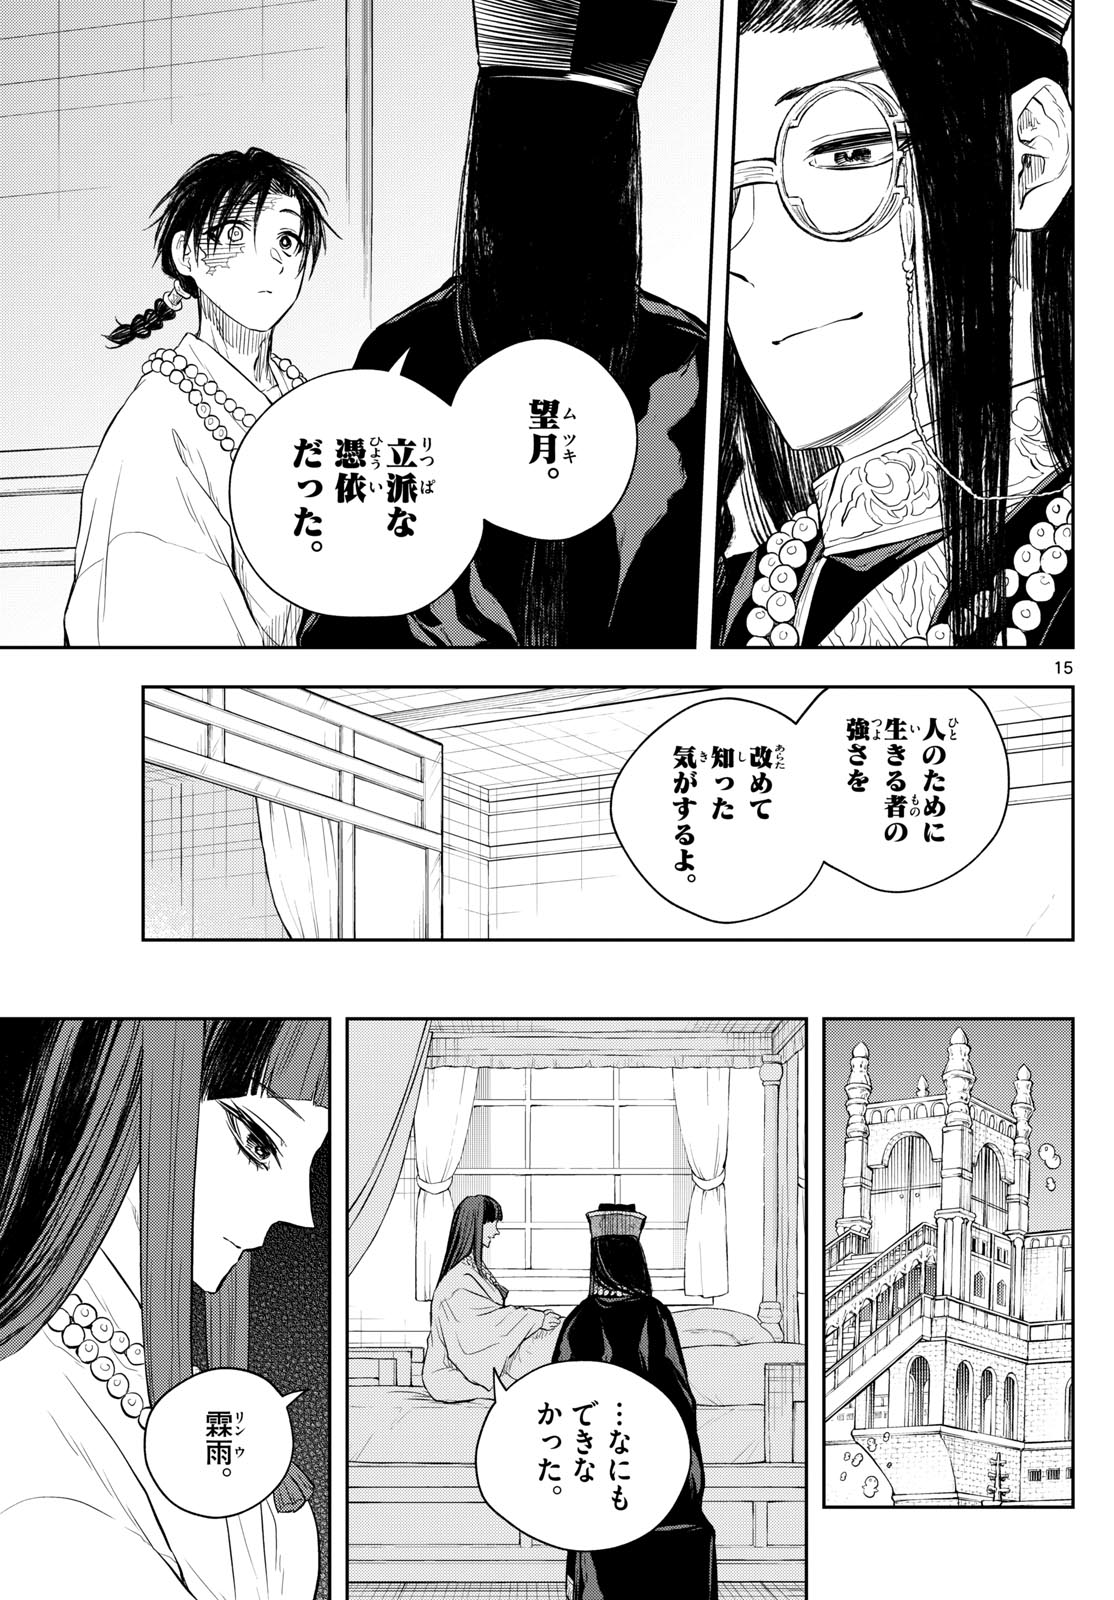 Akatsuki Jihen - Chapter 46 - Page 15